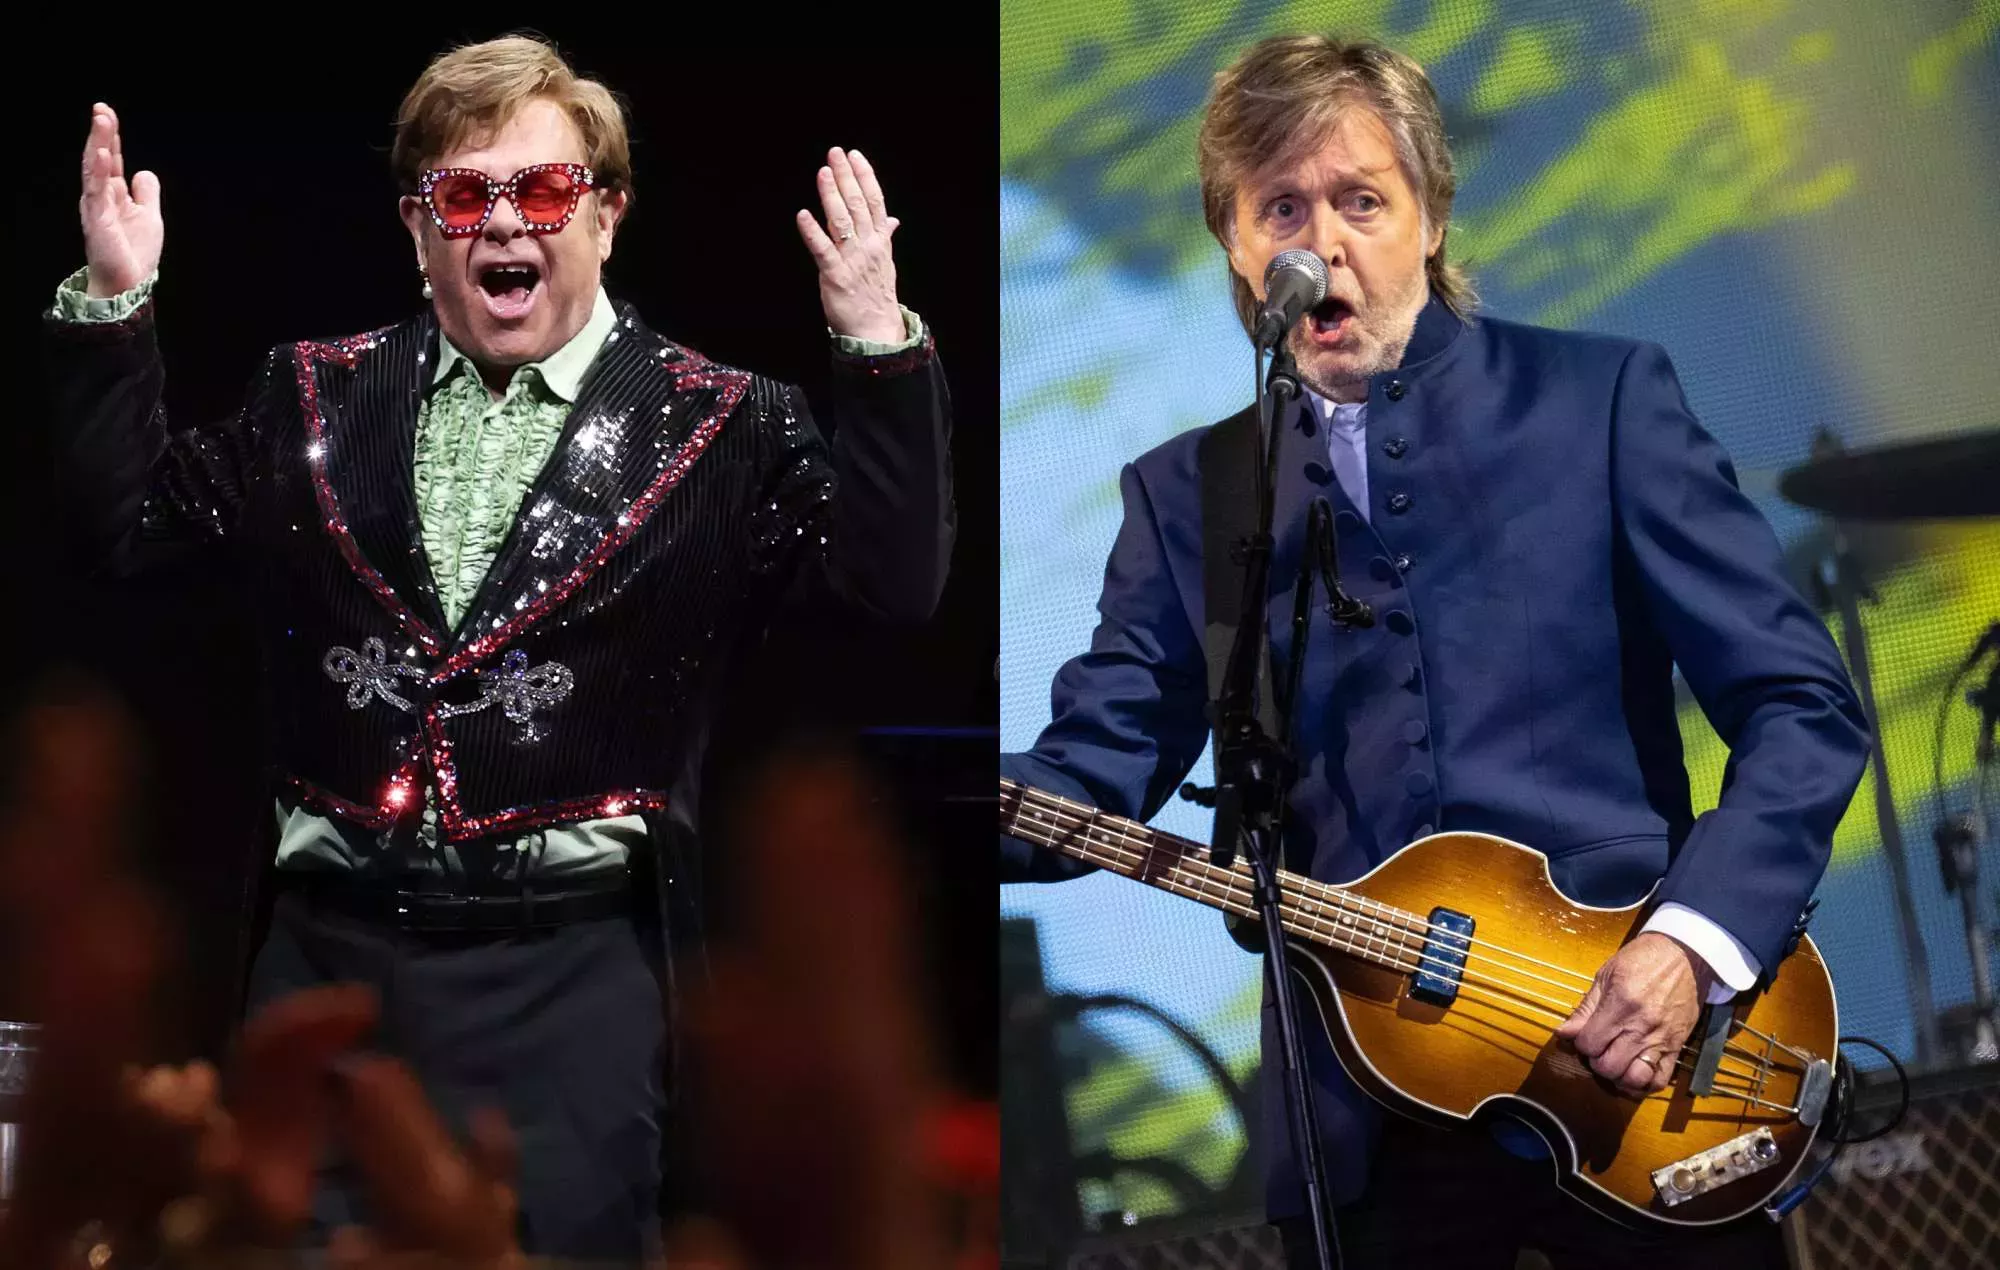 Los fans creen que Paul McCartney podría unirse a Elton John en el escenario de Glastonbury